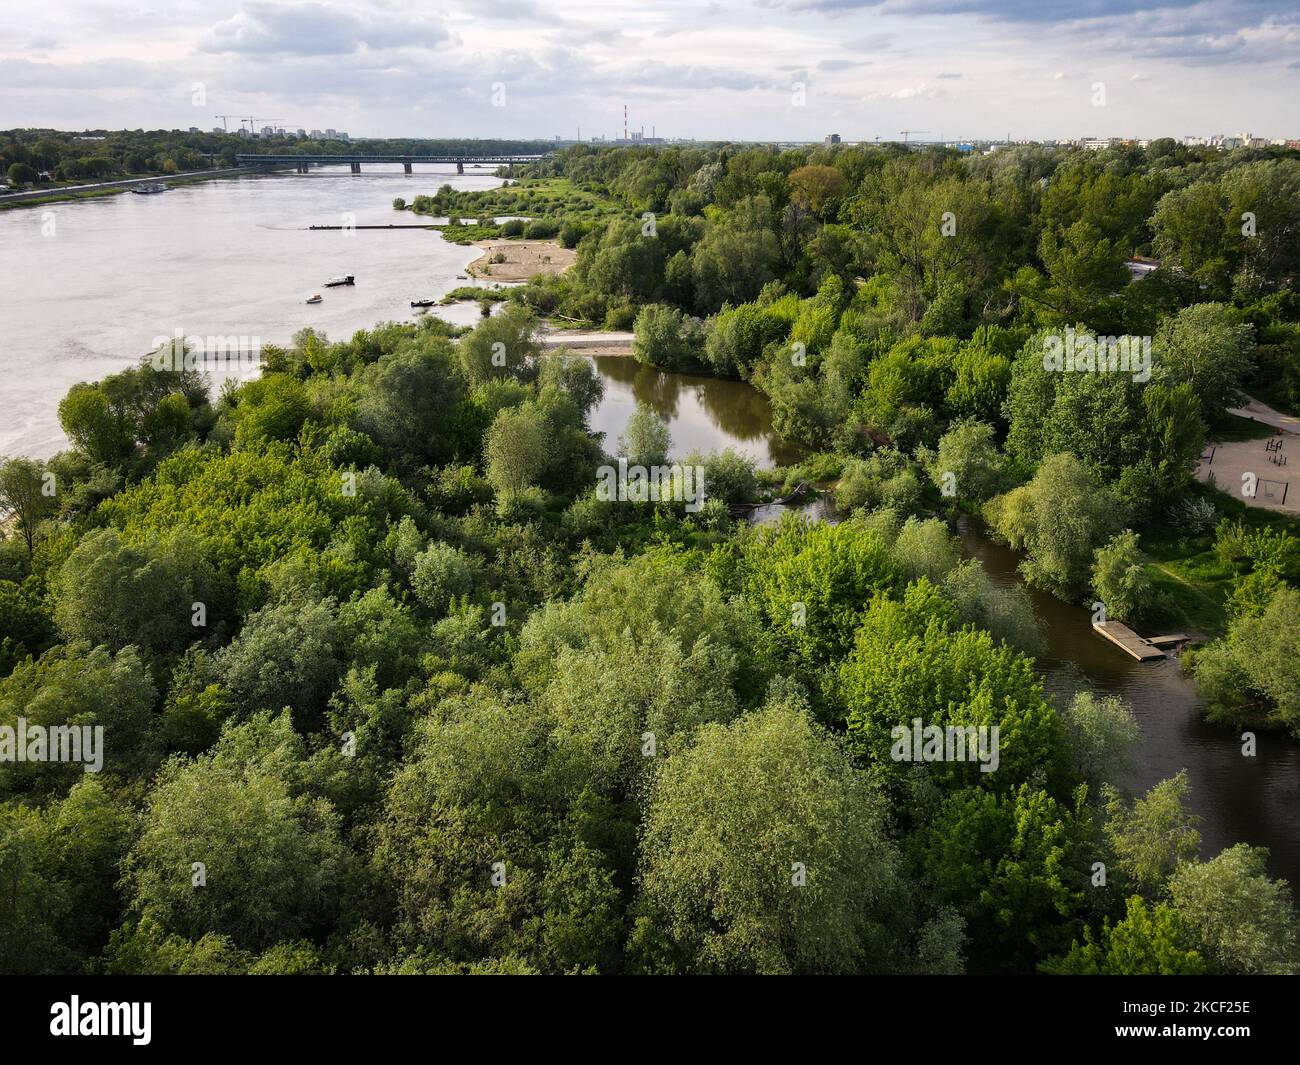 Una parte dell'area natura 2000 lungo il fiume Vistola si trova a Varsavia, Polonia, il 21 maggio 2021. Nel 2017 la Commissione europea ha dichiarato il 21 maggio come la Giornata europea natura 2000 per celebrare il 25th° anniversario della direttiva UE sulle abitudini alimentari. Natura 2000 è una rete di aree naturali protette. La Valle della Vistola Centrale che attraversa Varsavia è una delle 5300 aree designate natura 2000 in Polonia ed è sede di molte specie diverse di uccelli, isole incontaminate e sponde del fiume. (Foto di Str/NurPhoto) Foto Stock